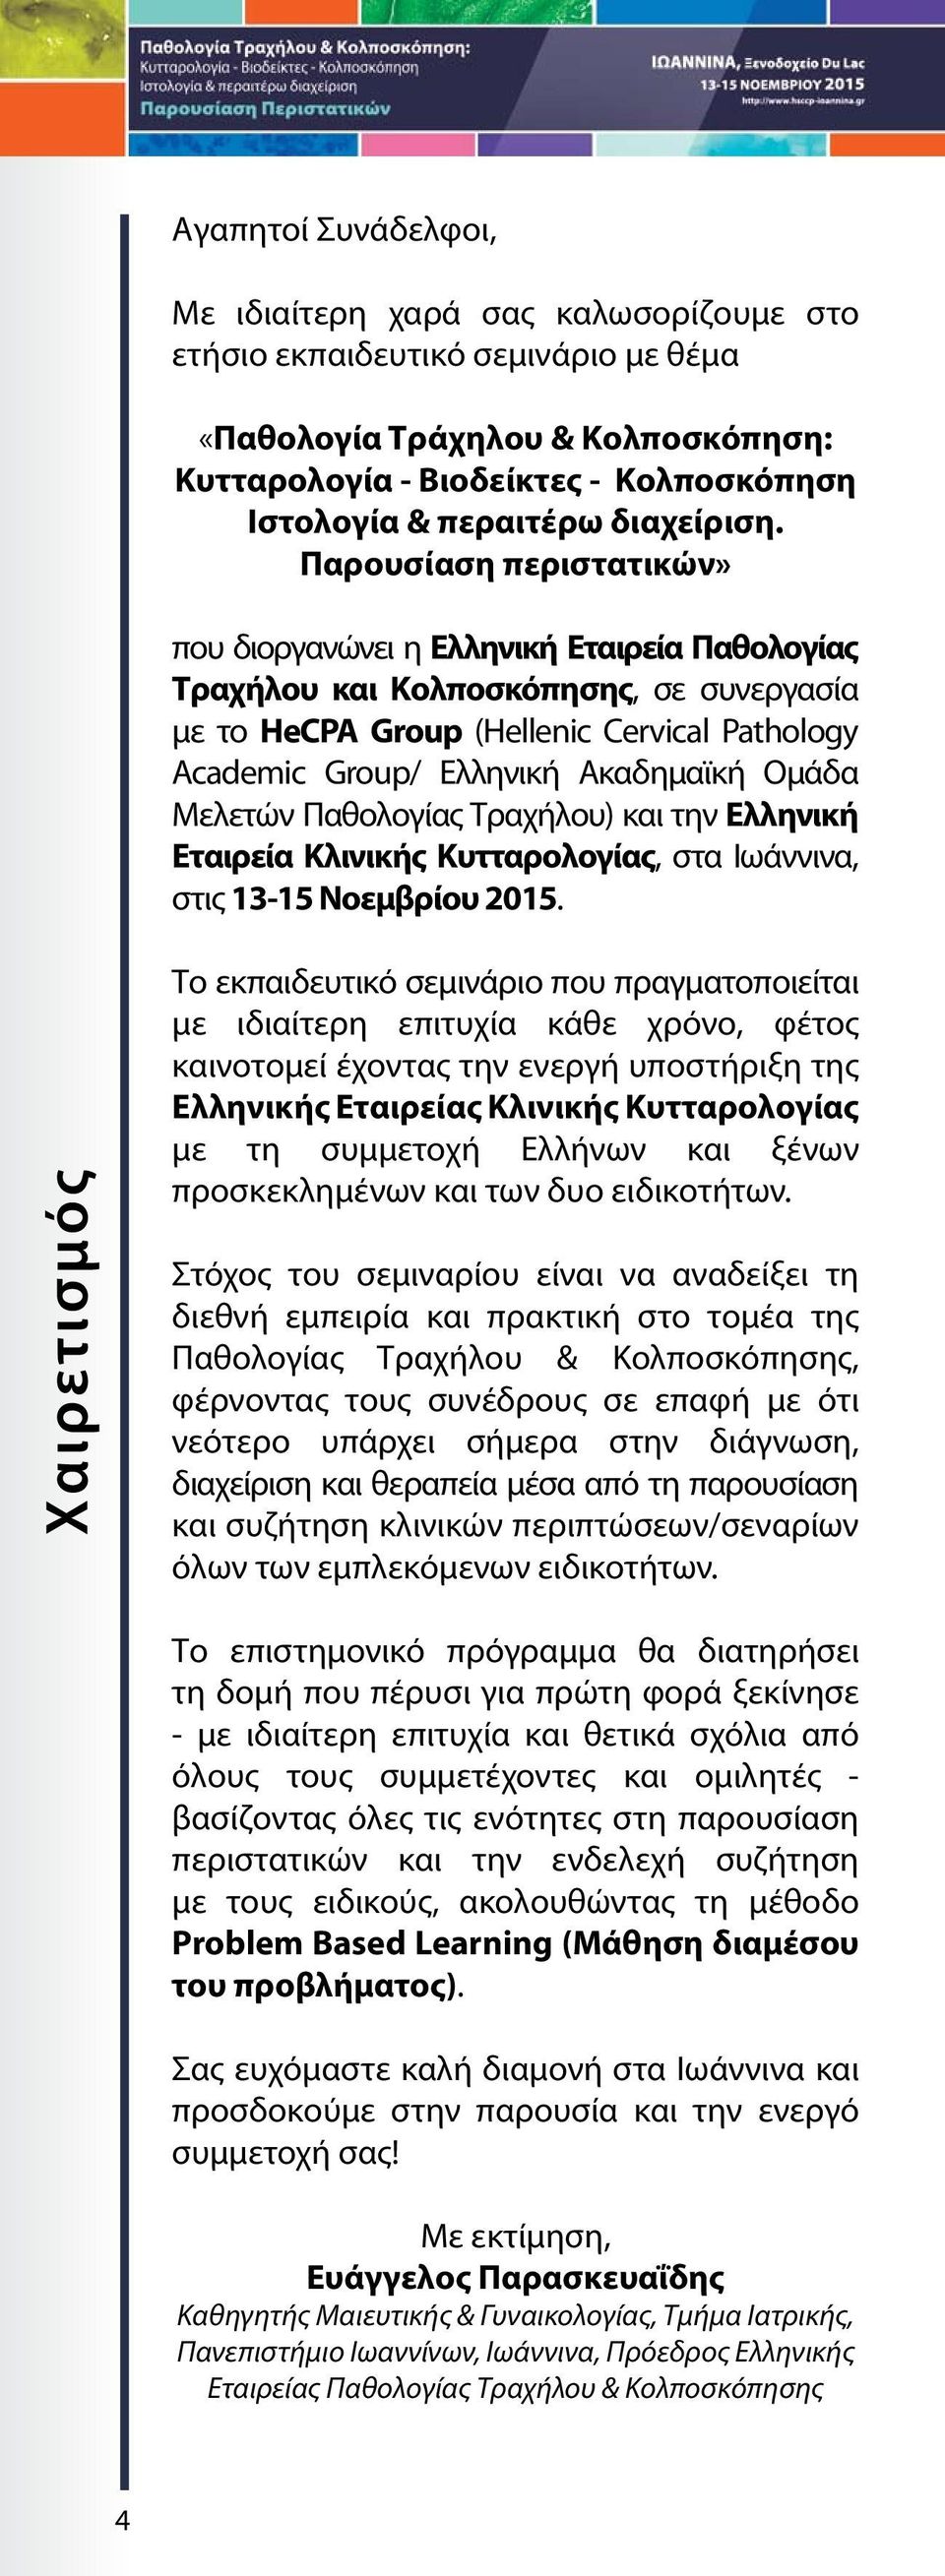 Παρουσίαση περιστατικών» που διοργανώνει η Ελληνική Εταιρεία Παθολογίας Τραχήλου και Κολποσκόπησης, σε συνεργασία με το HeCPA Group (Hellenic Cervical Pathology Academic Group/ Ελληνική Ακαδημαϊκή